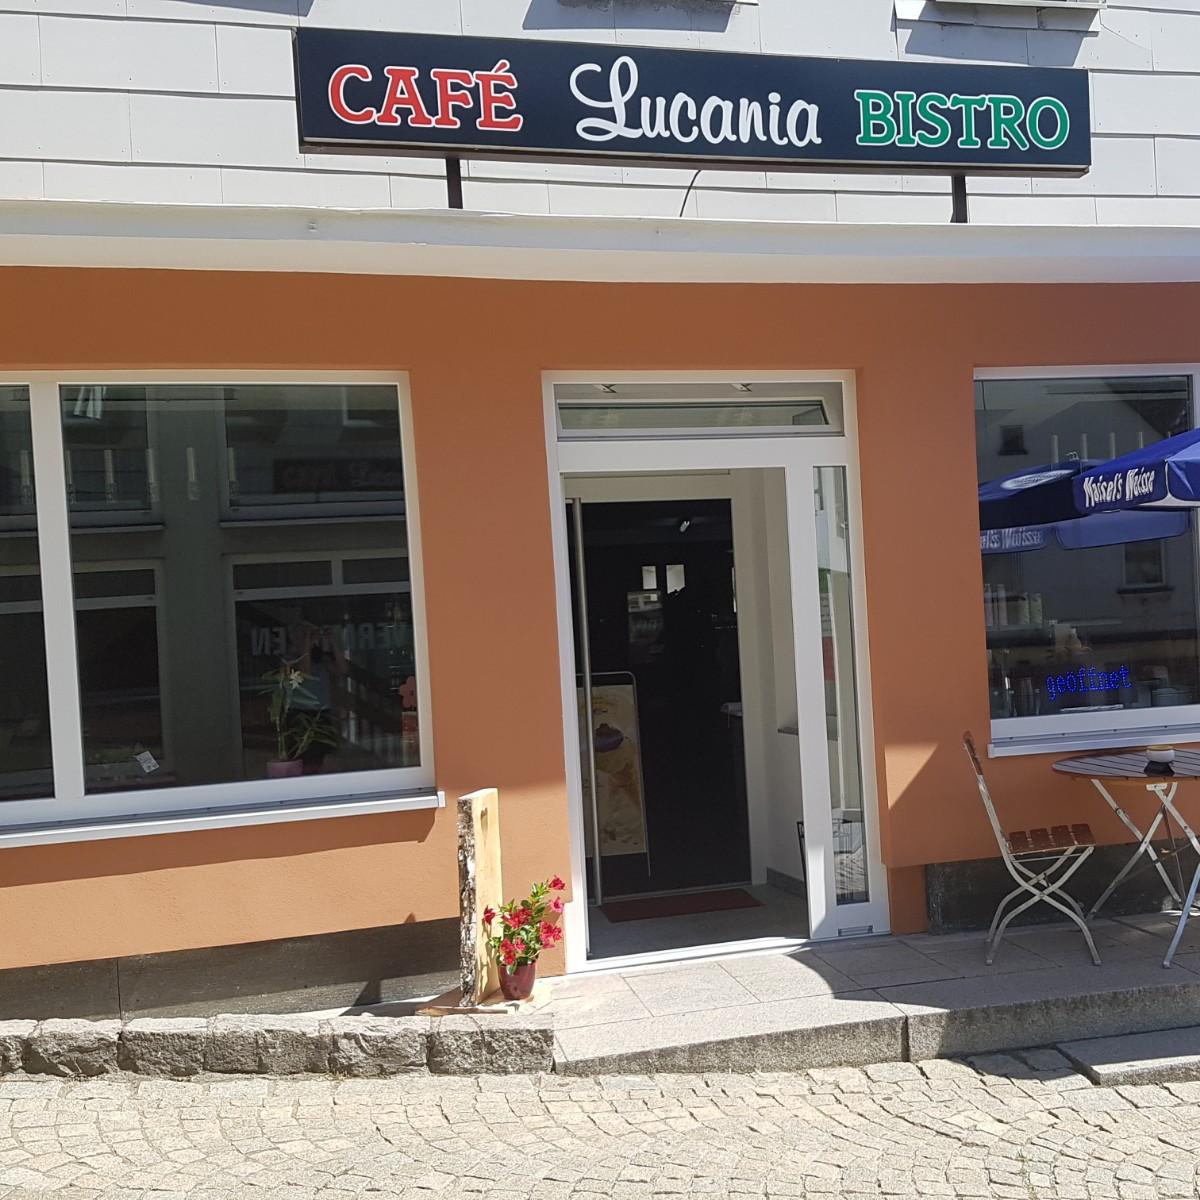 Restaurant "Café Lucania Bistro, Pizzeria - Massimiliano Lauriola" in Hollfeld